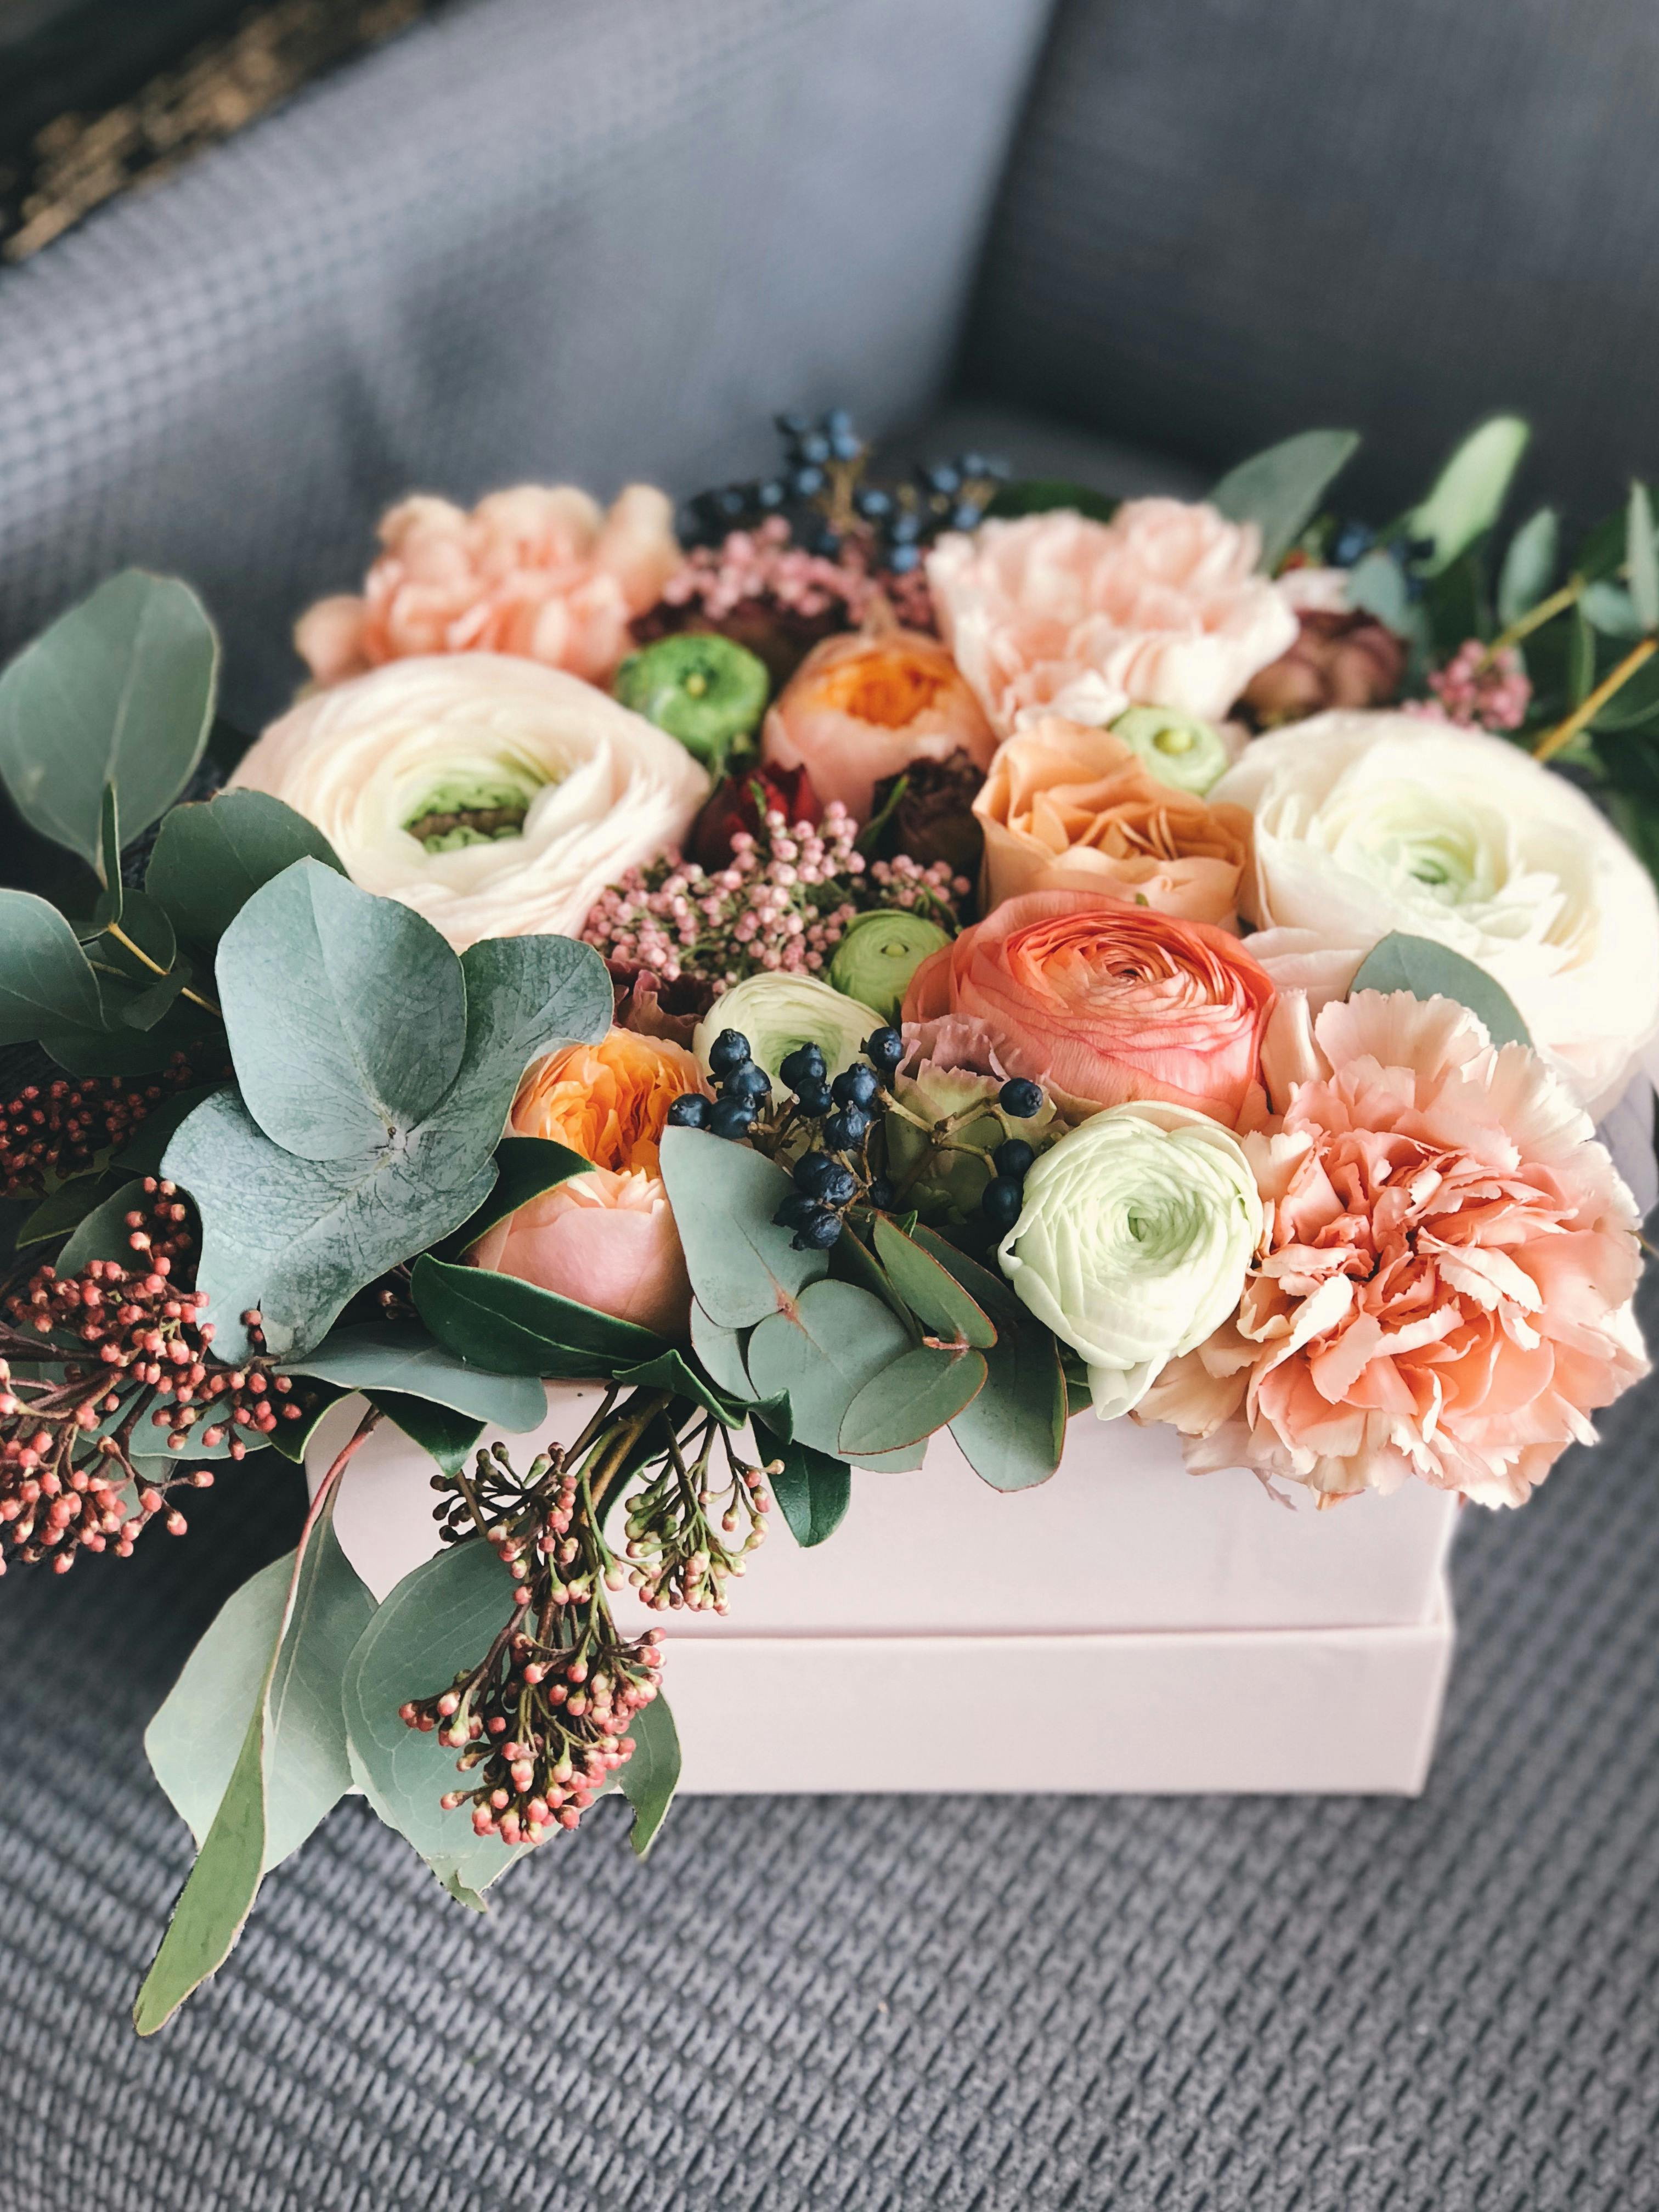 Un arreglo floral | Fuente: Pexels